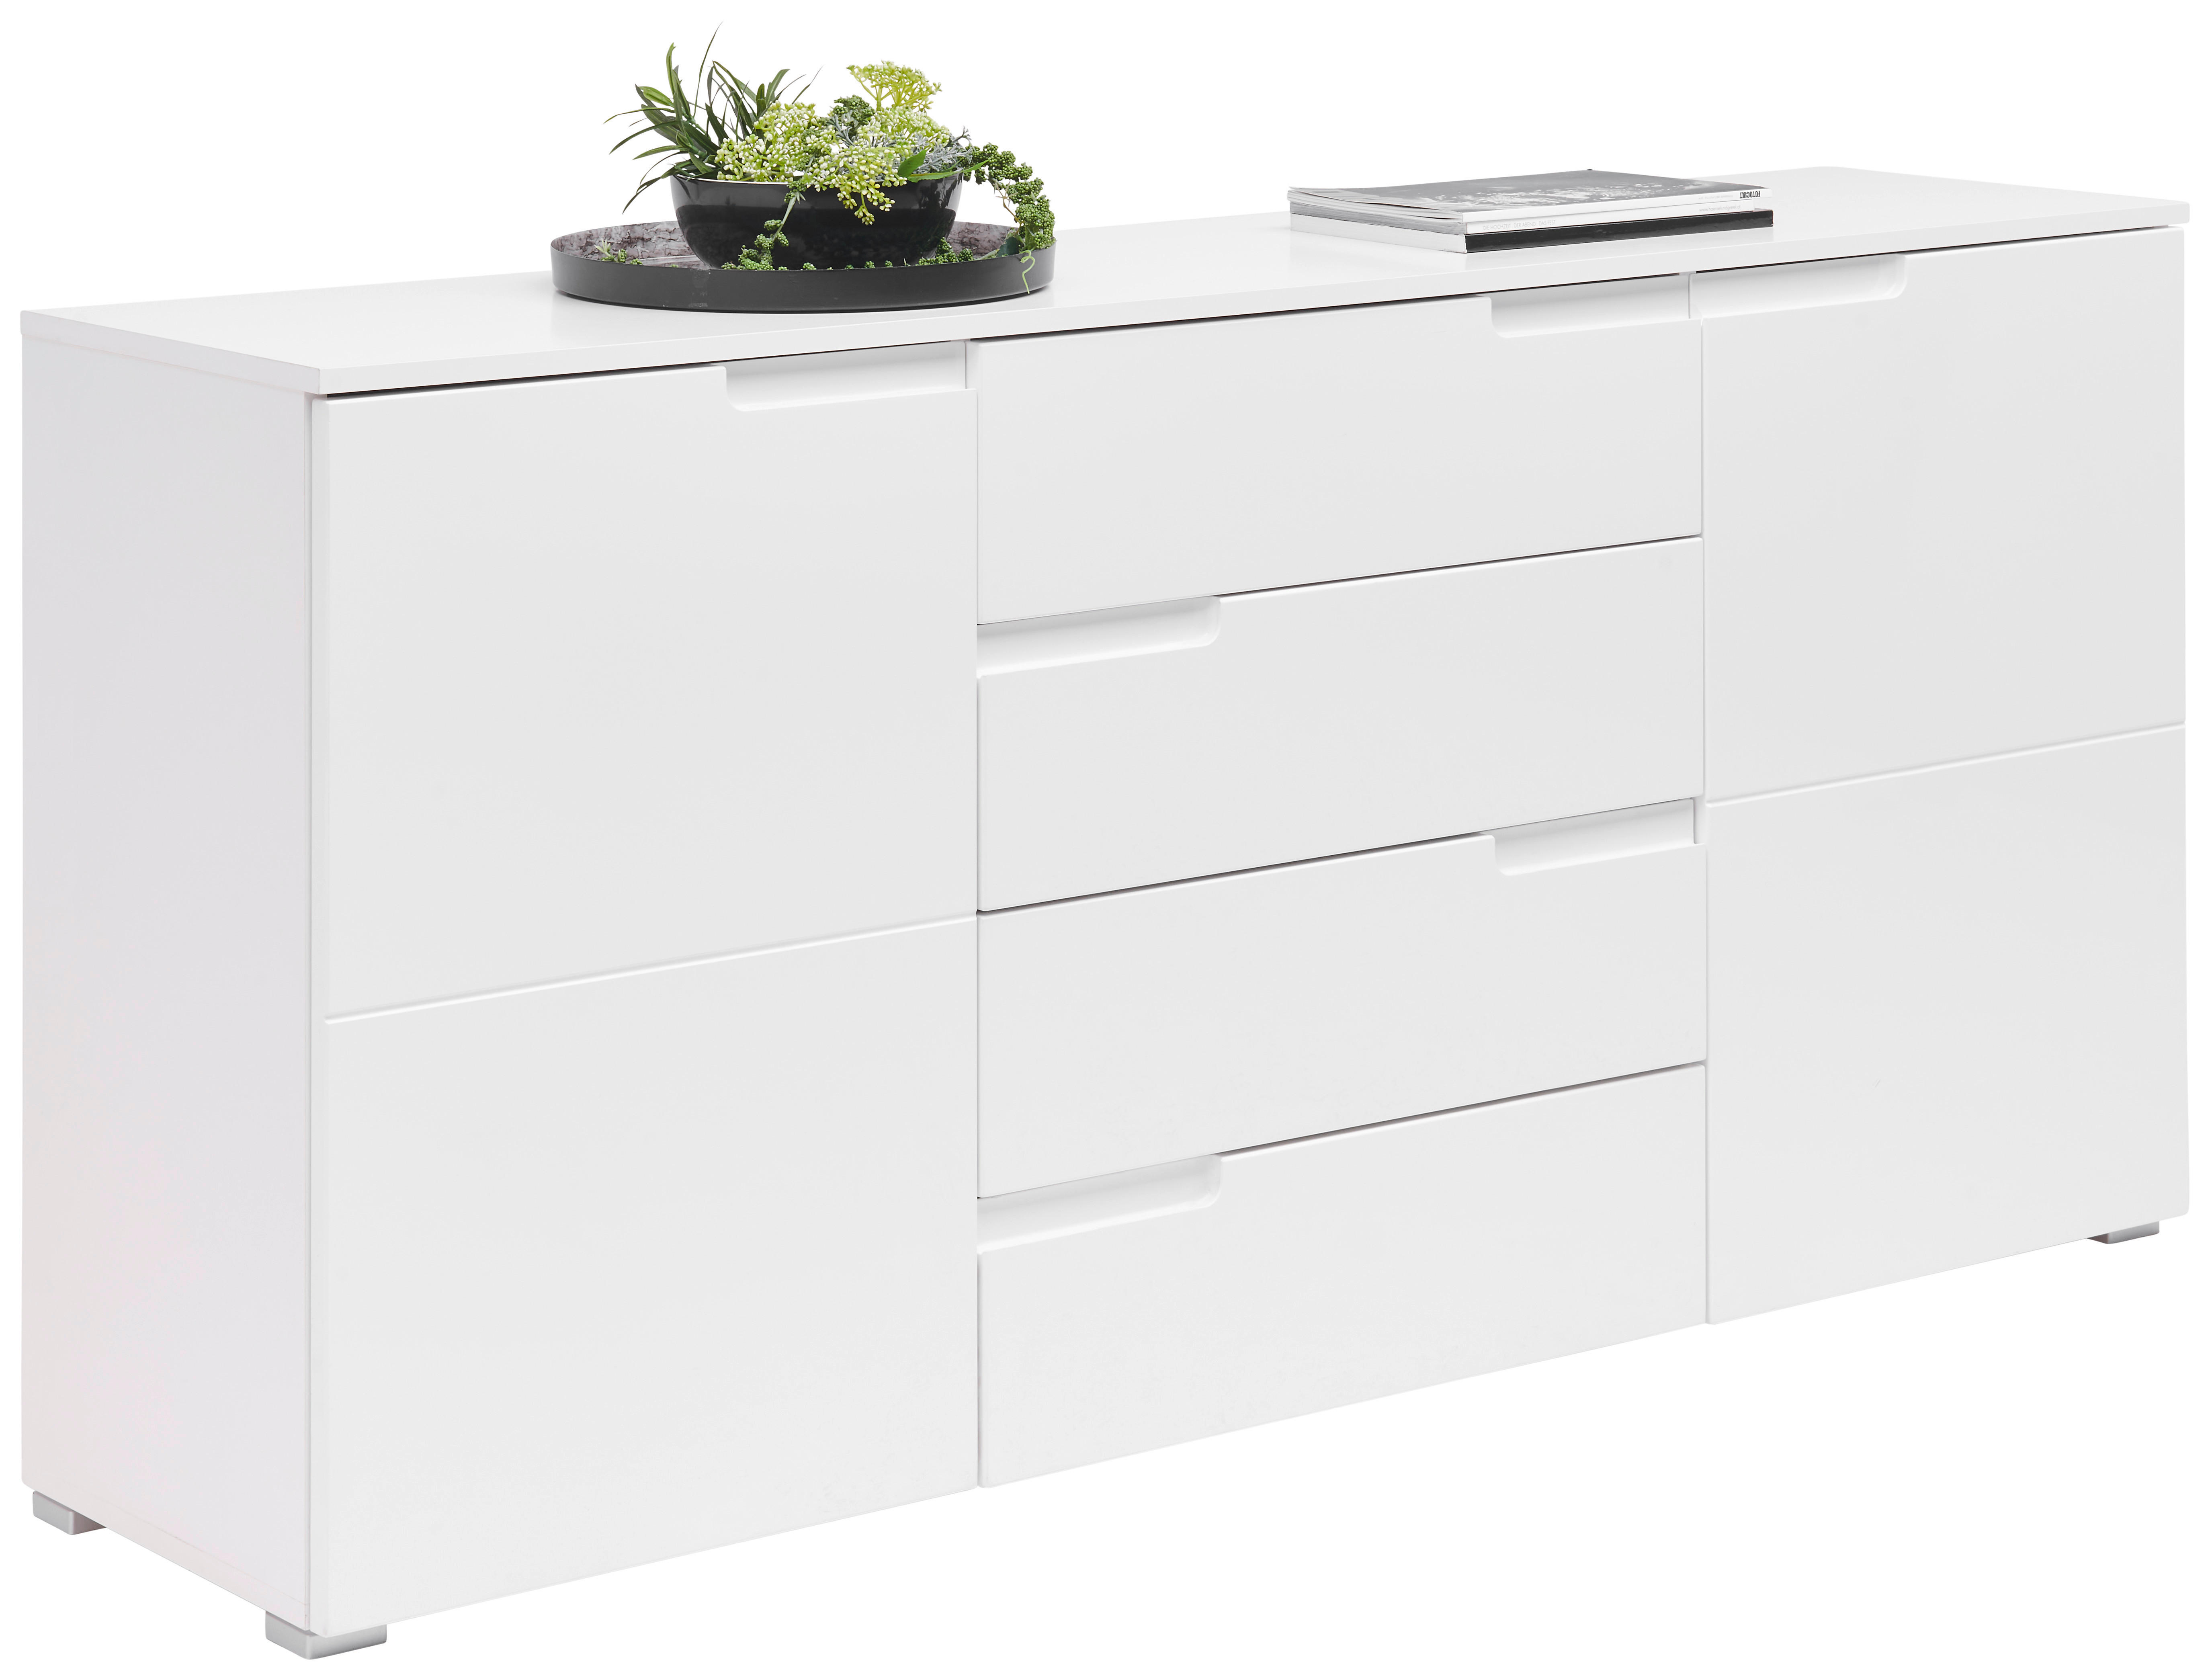 SIDEBOARD Weiß Hochglanz, Weiß  - Weiß Hochglanz/Silberfarben, Design, Holzwerkstoff/Kunststoff (165/80/40cm) - Carryhome